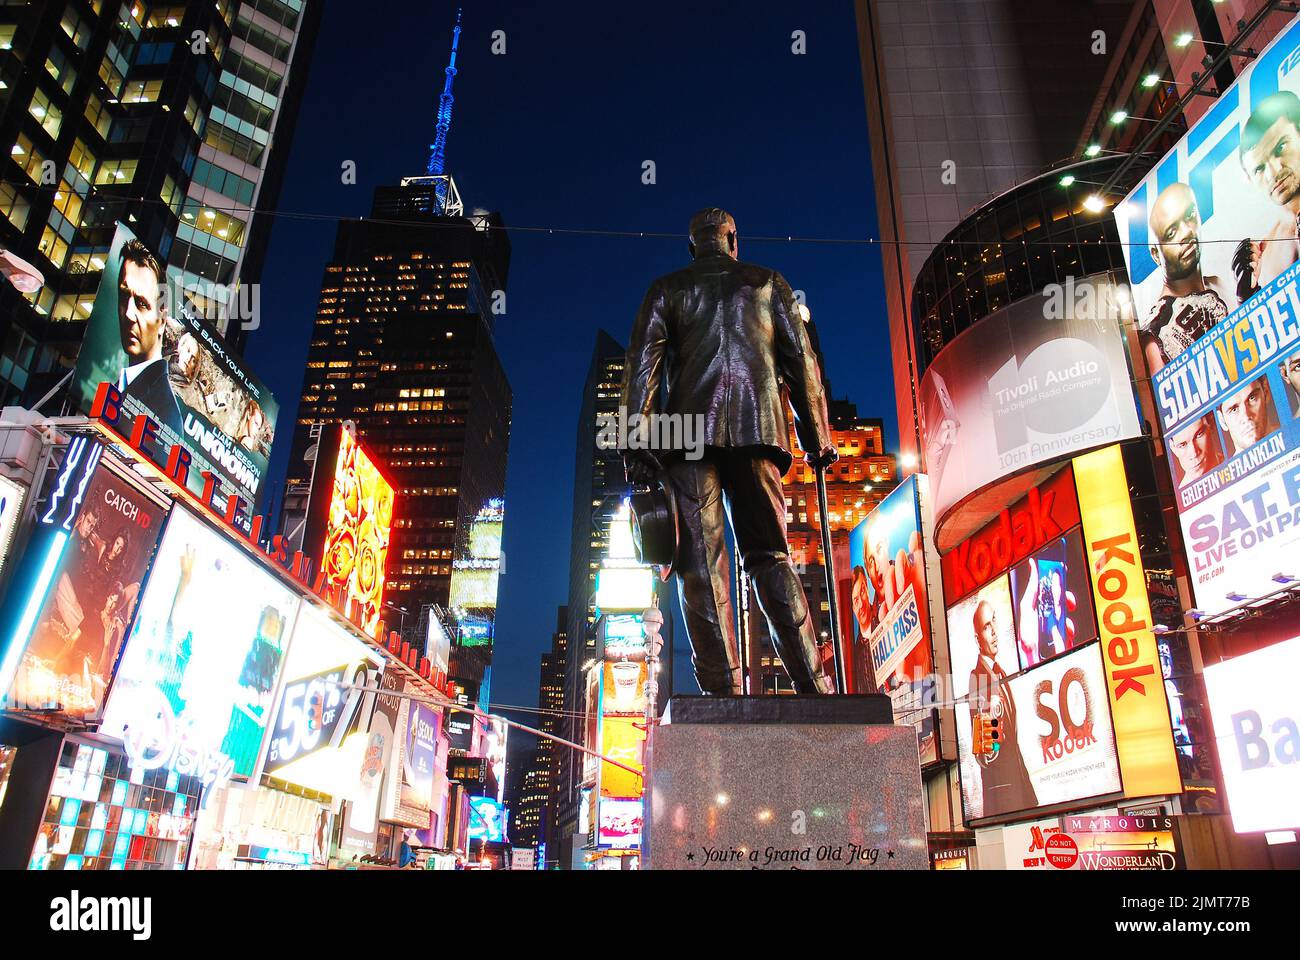 Eine Skulptur von George M Cohan, der Give my regards to Broadway schrieb, steht im Herzen des Times Square, New York City, umgeben von hellen Anzeigen Stockfoto